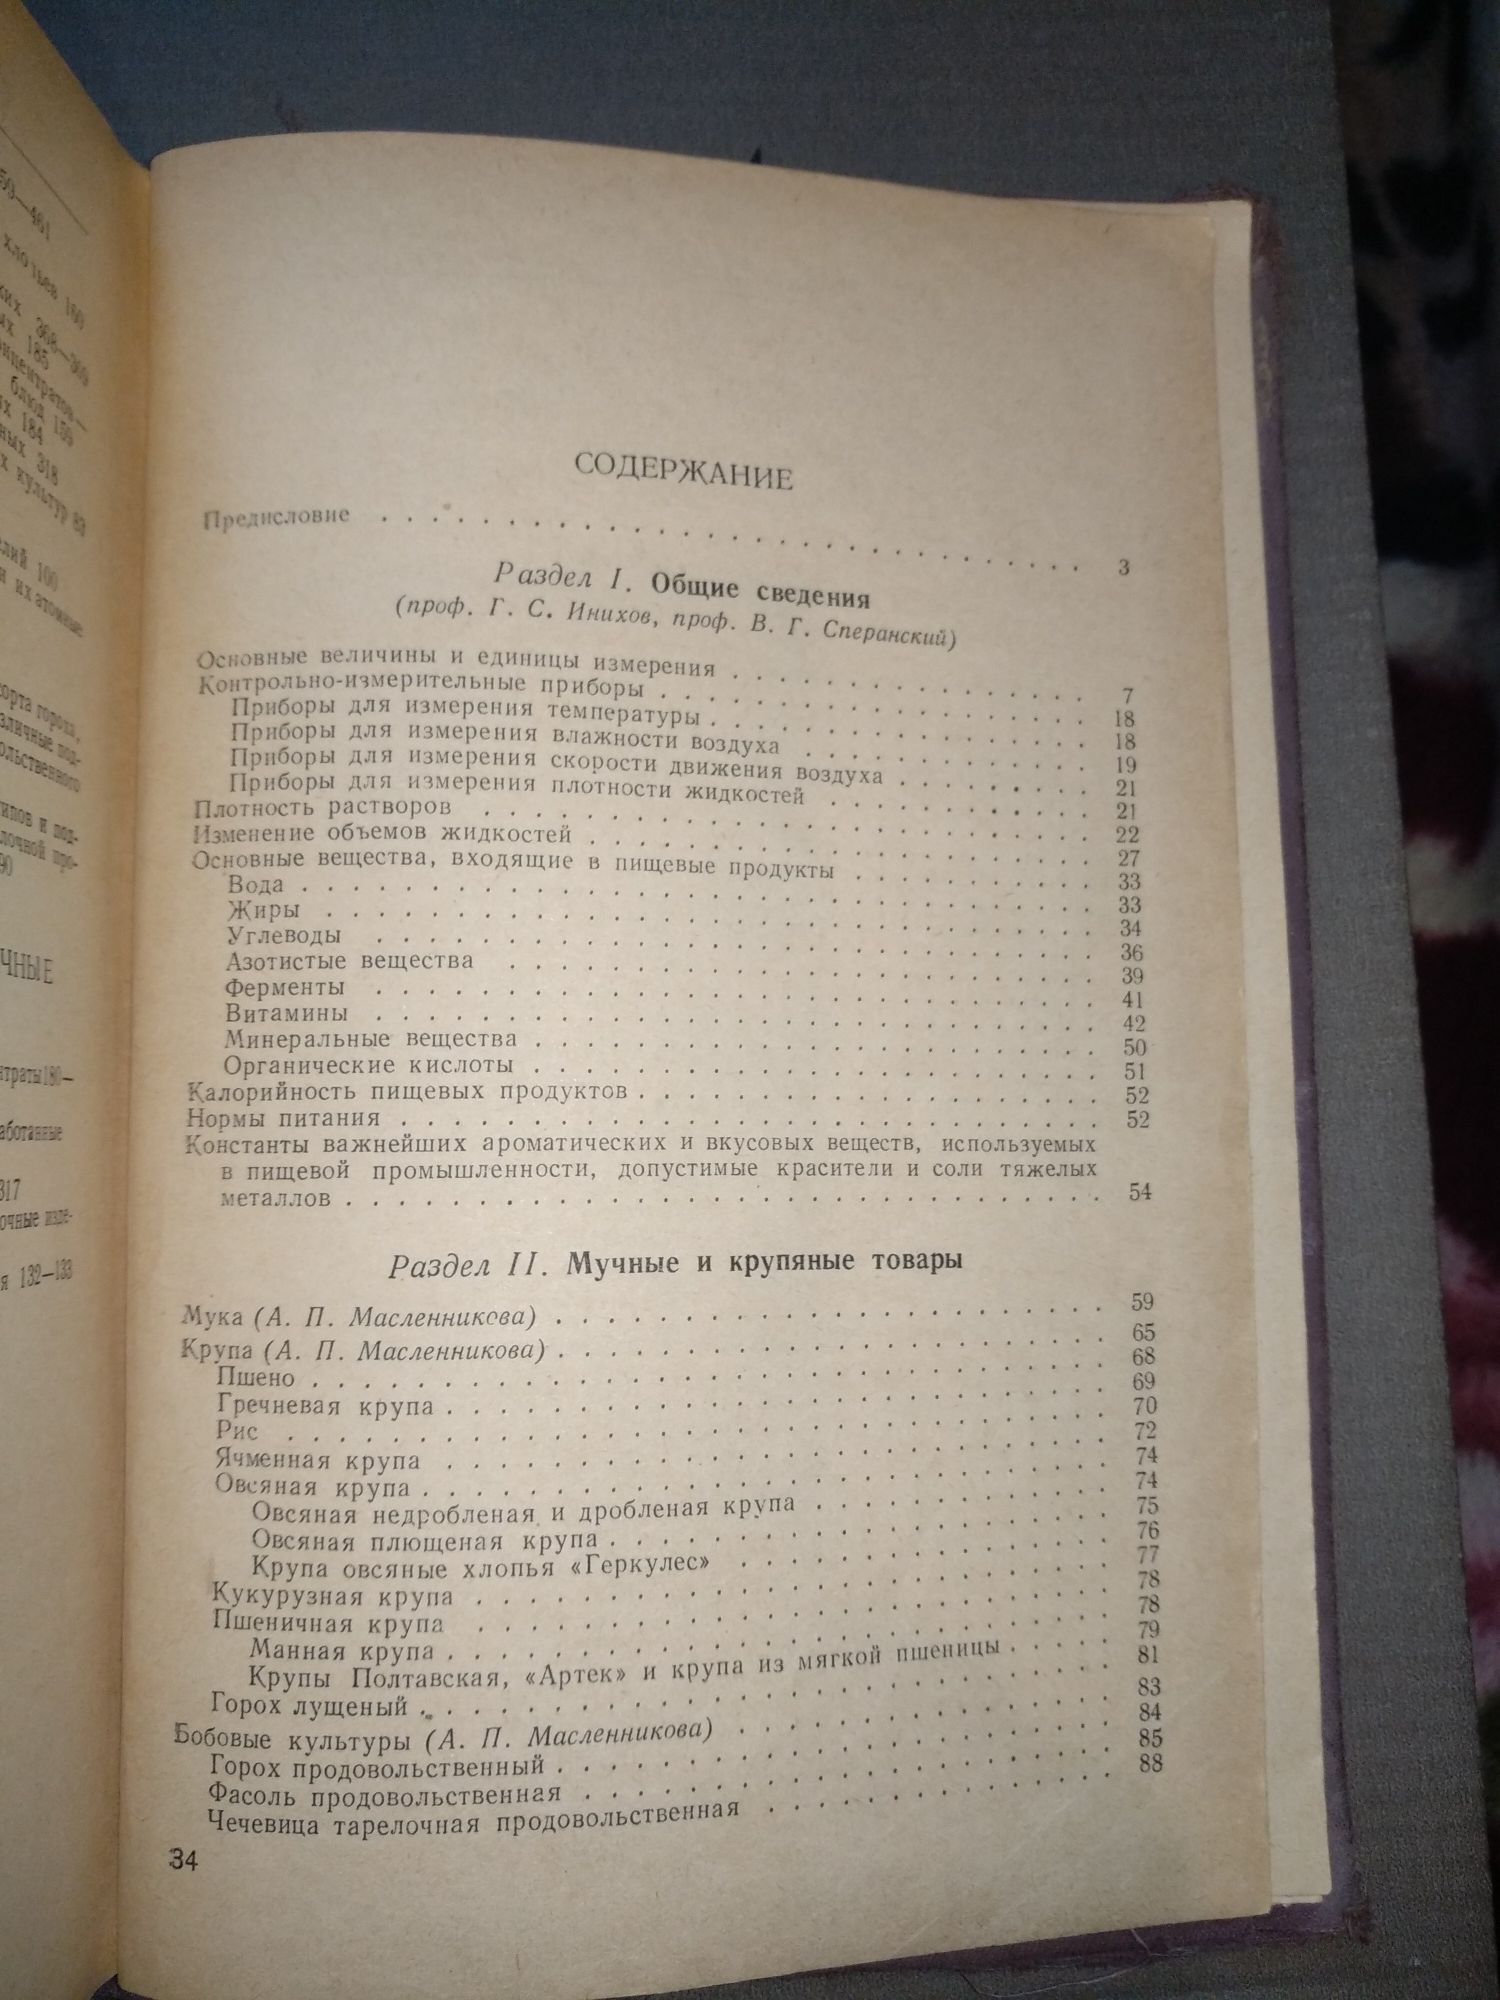 Справочник товароведа продовольственных товаров 1955 г. Часть 1